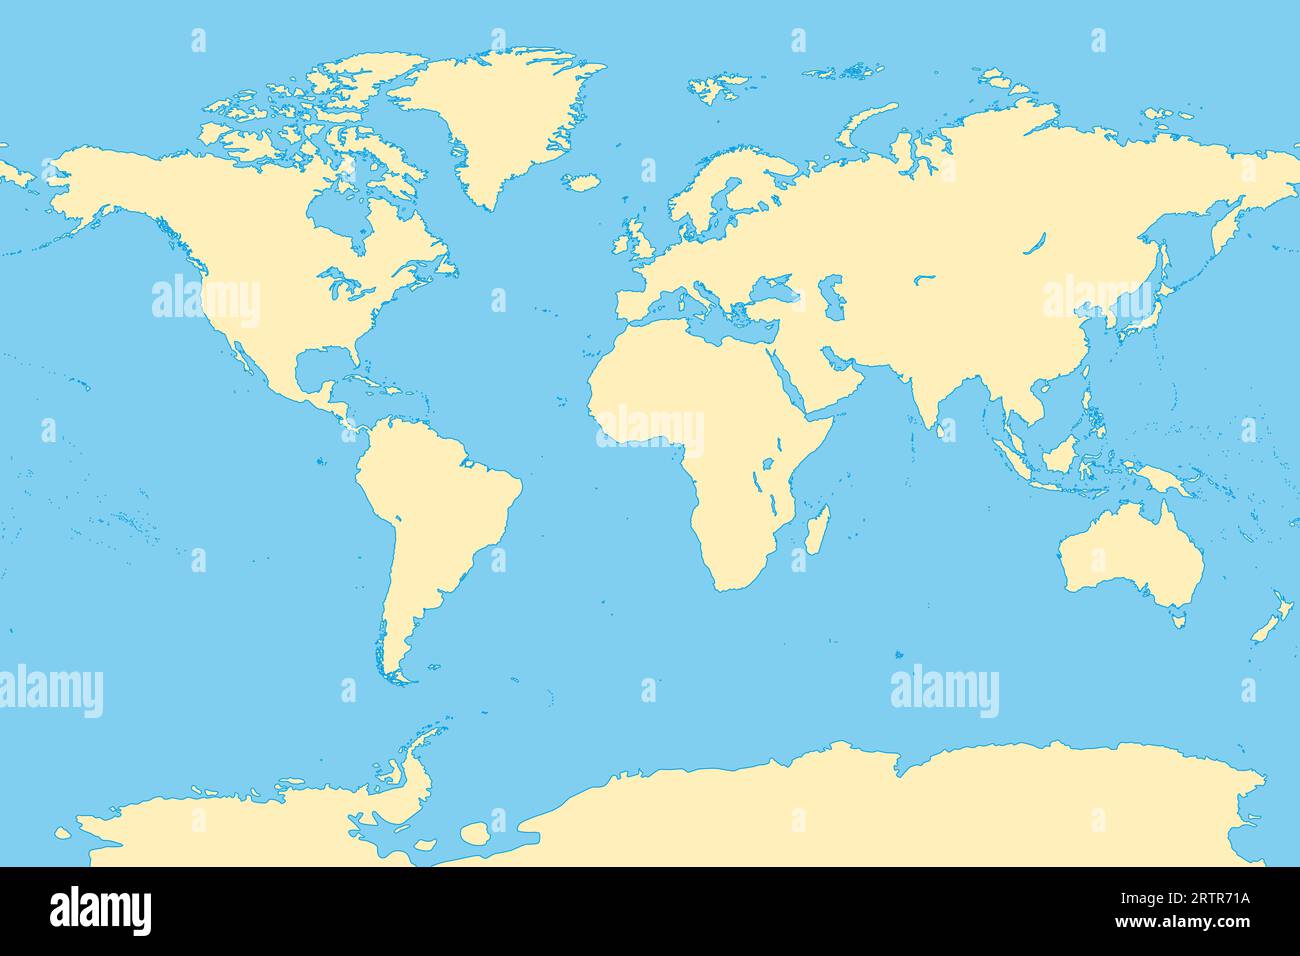 Le monde, carte de référence générale. Carte de la surface de la Terre avec les masses terrestres de tous les continents, avec les plus grands lacs, océans et mers. Banque D'Images